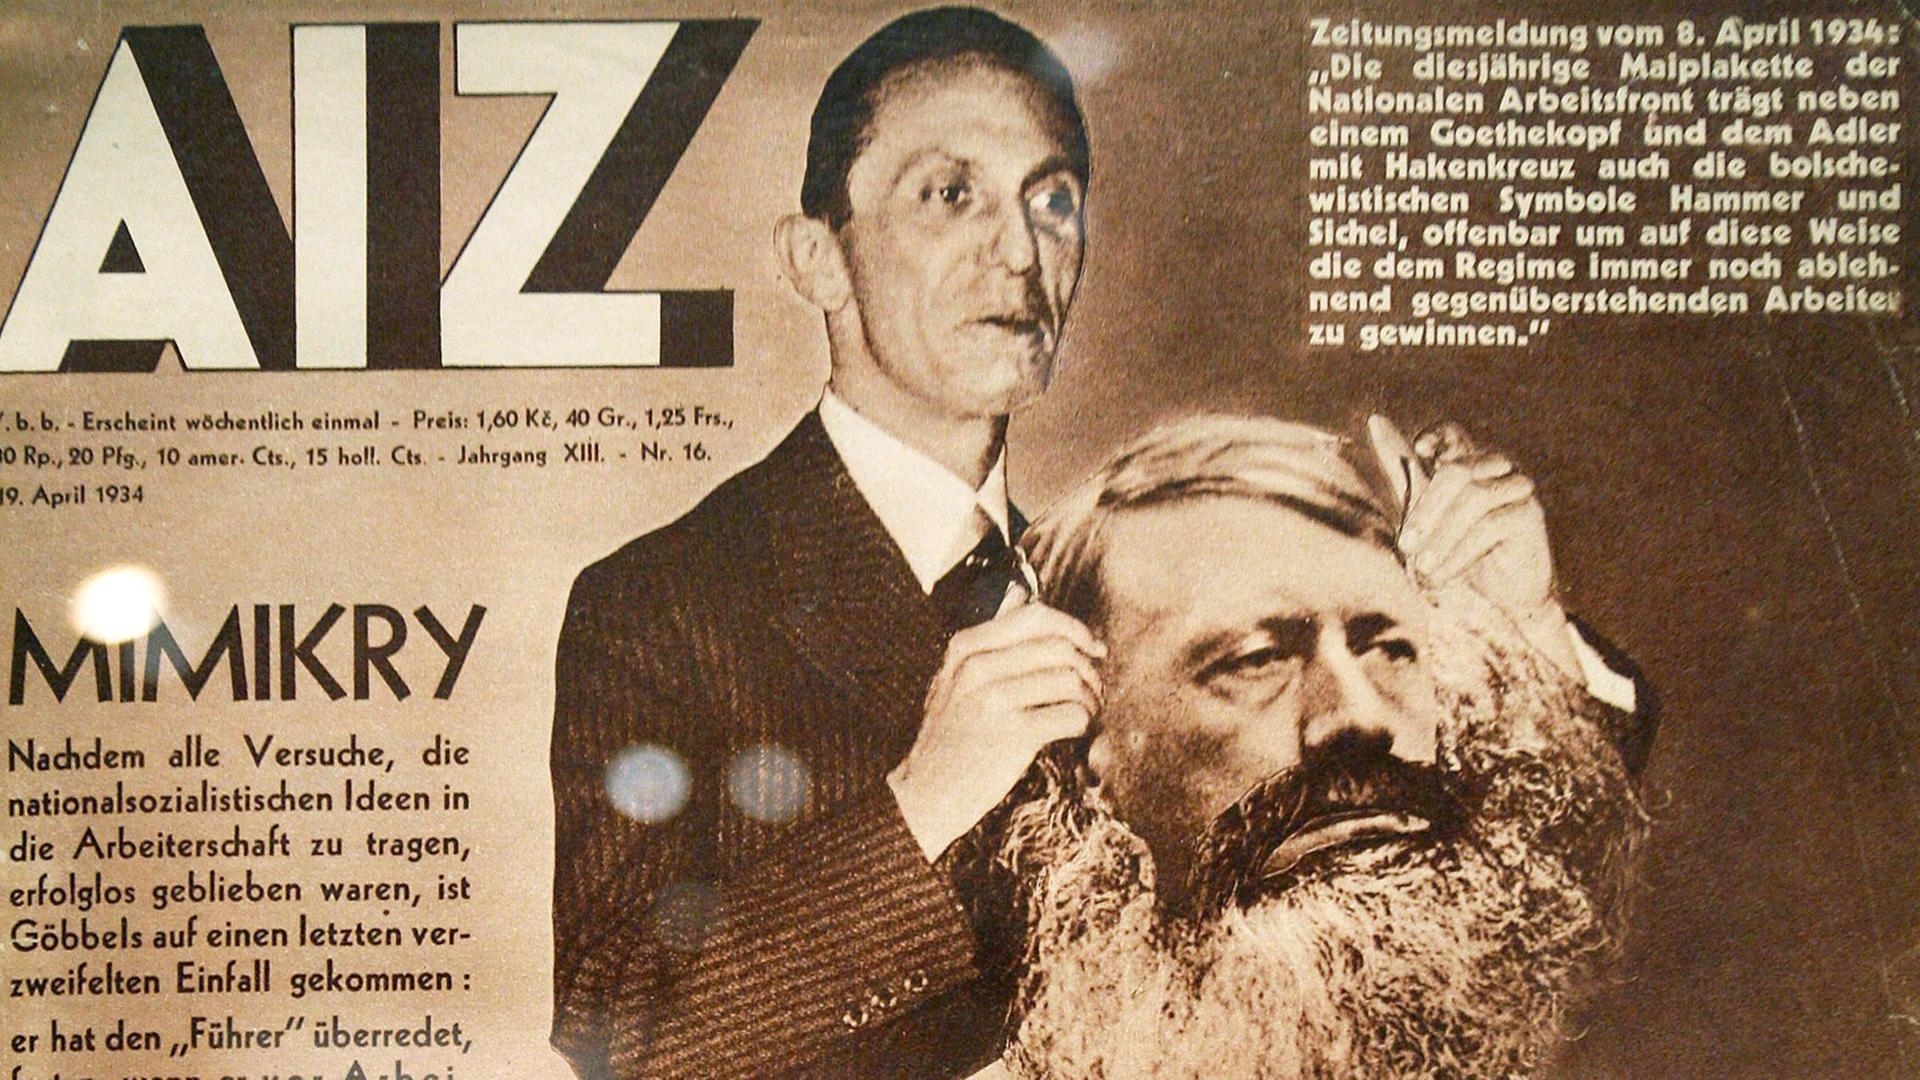 Die Titelseite der Arbeiter Illustrierten Zeitung (AIZ) mit der Fotomontage "Mimikry" aus dem Jahr 1934 von John Heartfield in der Kölner Ausstellung "Marinus - Heartfield - Politische Fotomontage der 1930er Jahre".